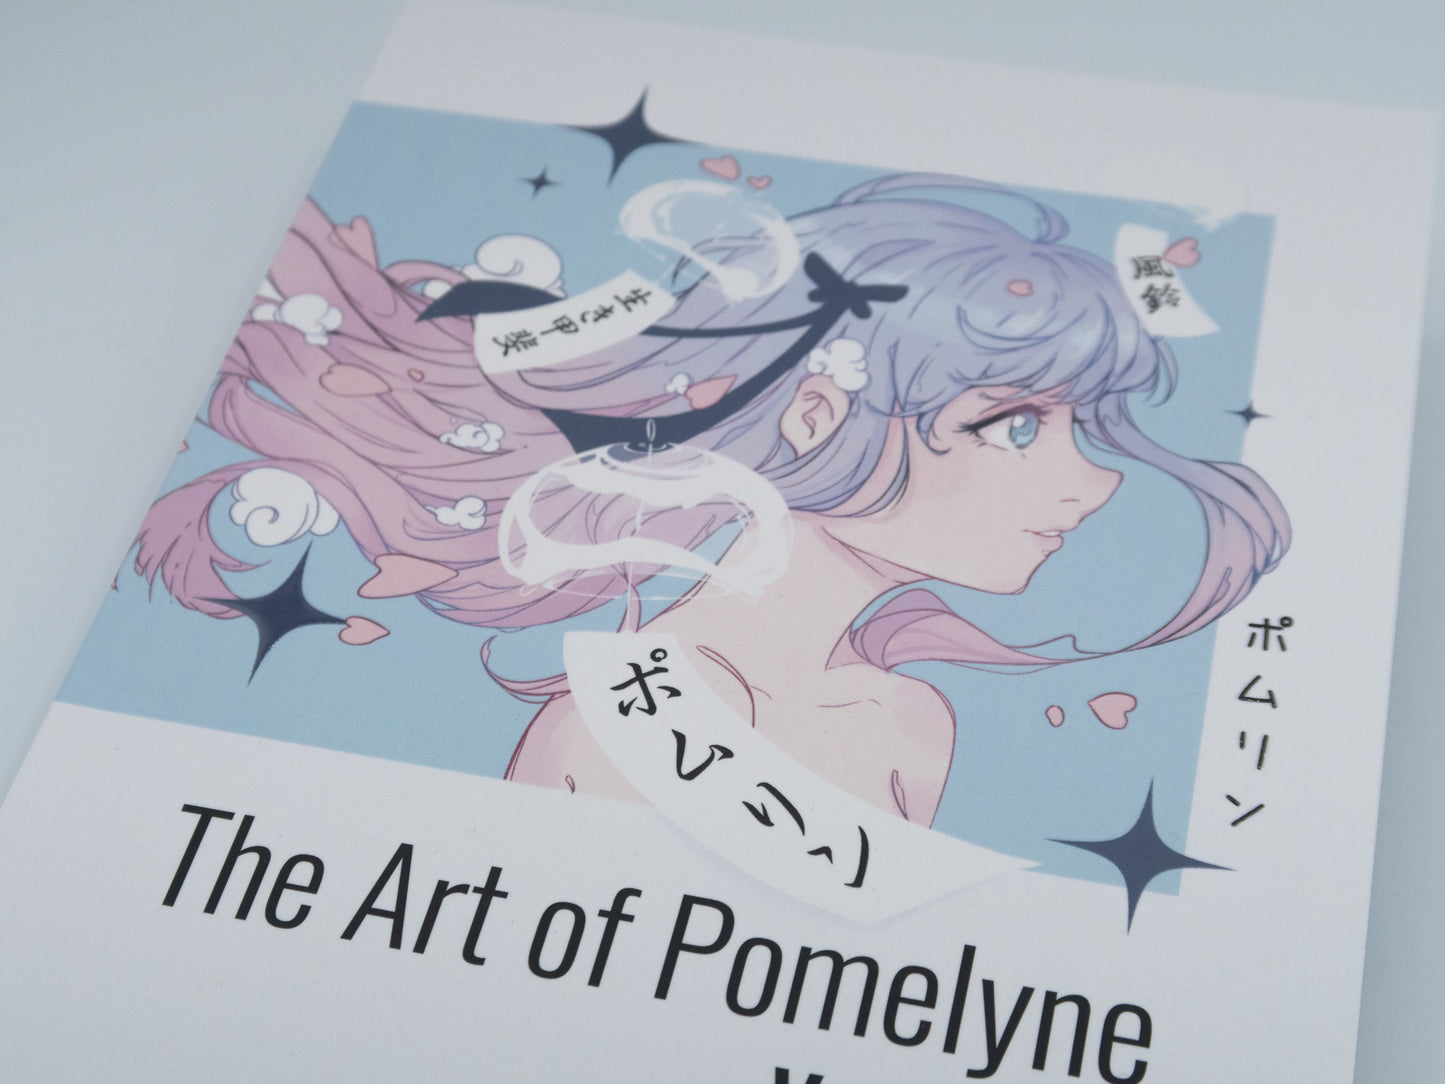 The Art of Pomelyne Volume 1